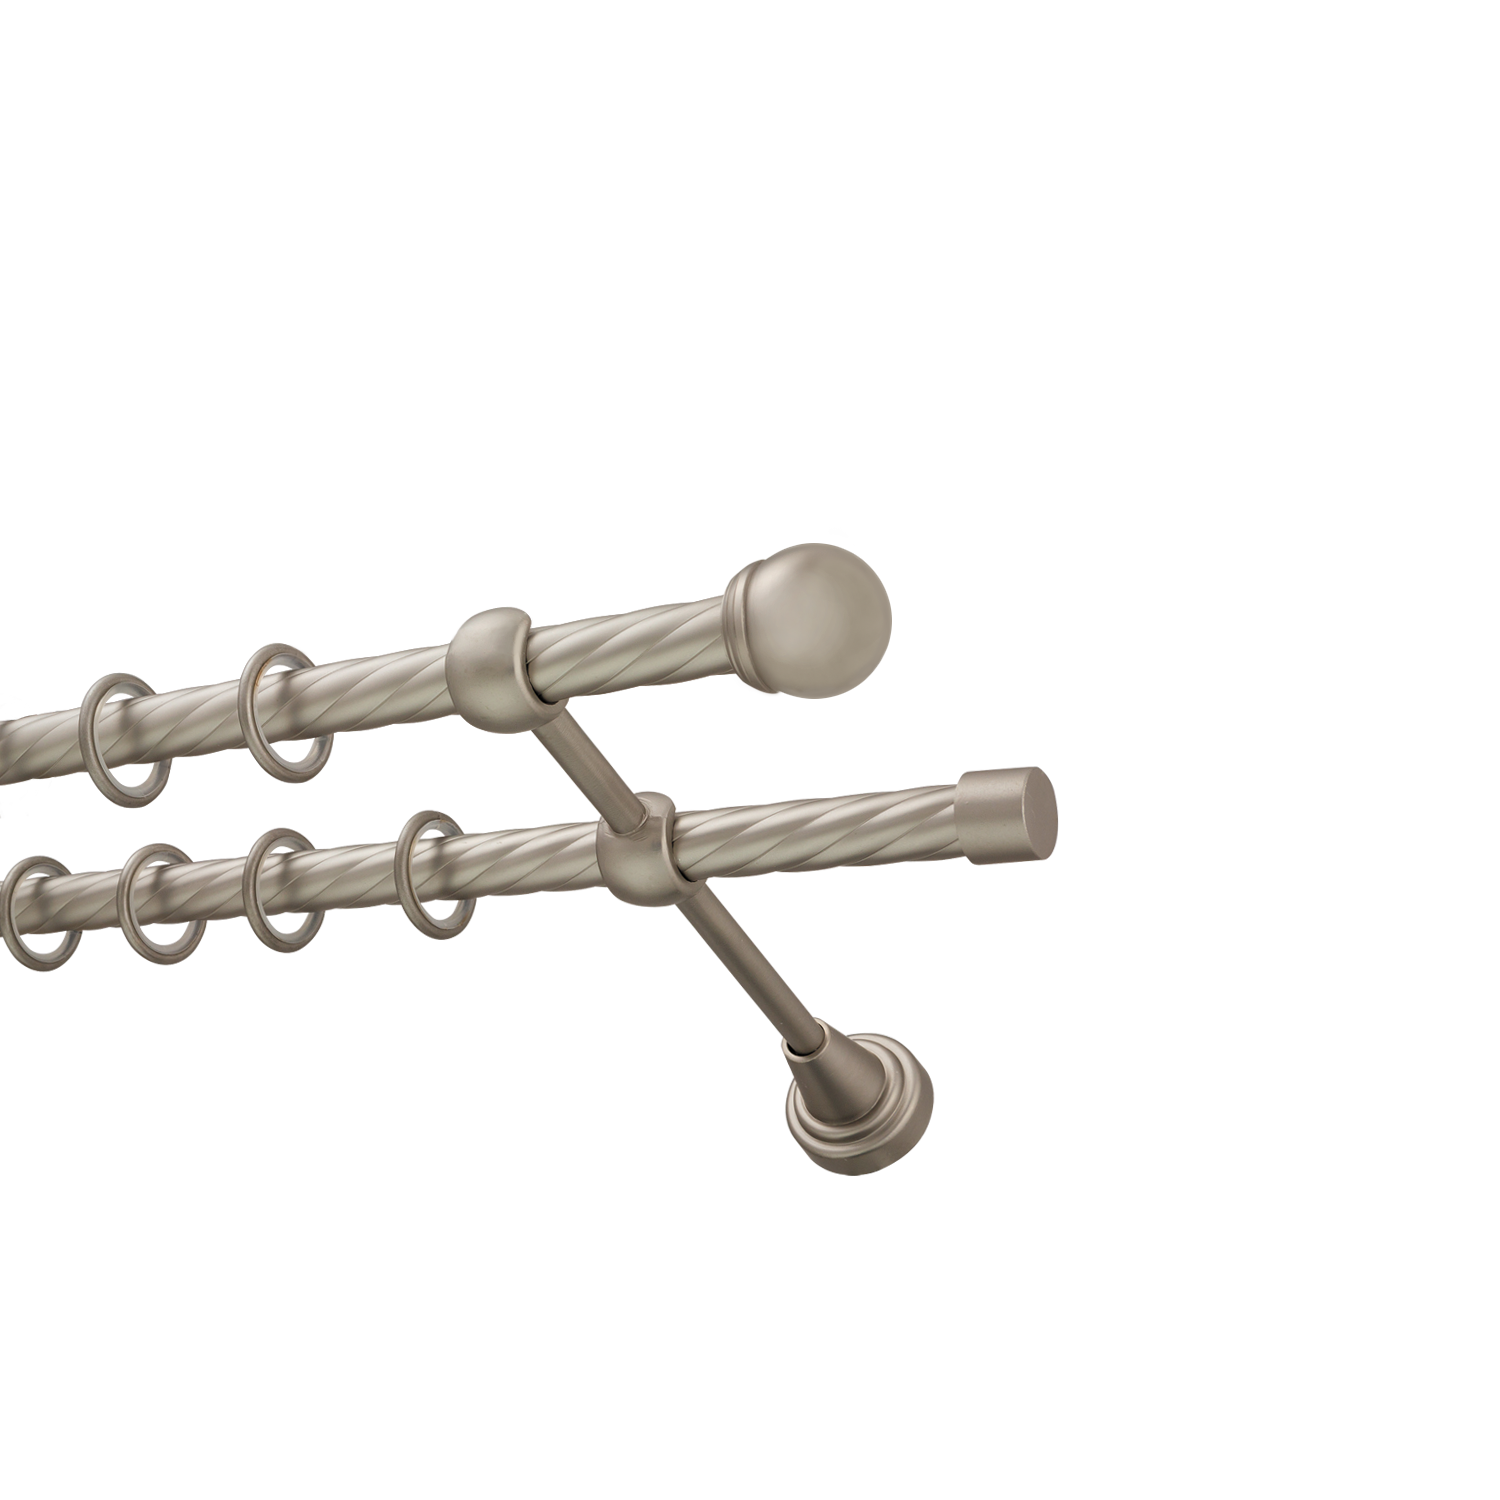 Металлический карниз для штор Вива, двухрядный 16/16 мм, сталь, витая штанга, длина 300 см - фото Wikidecor.ru